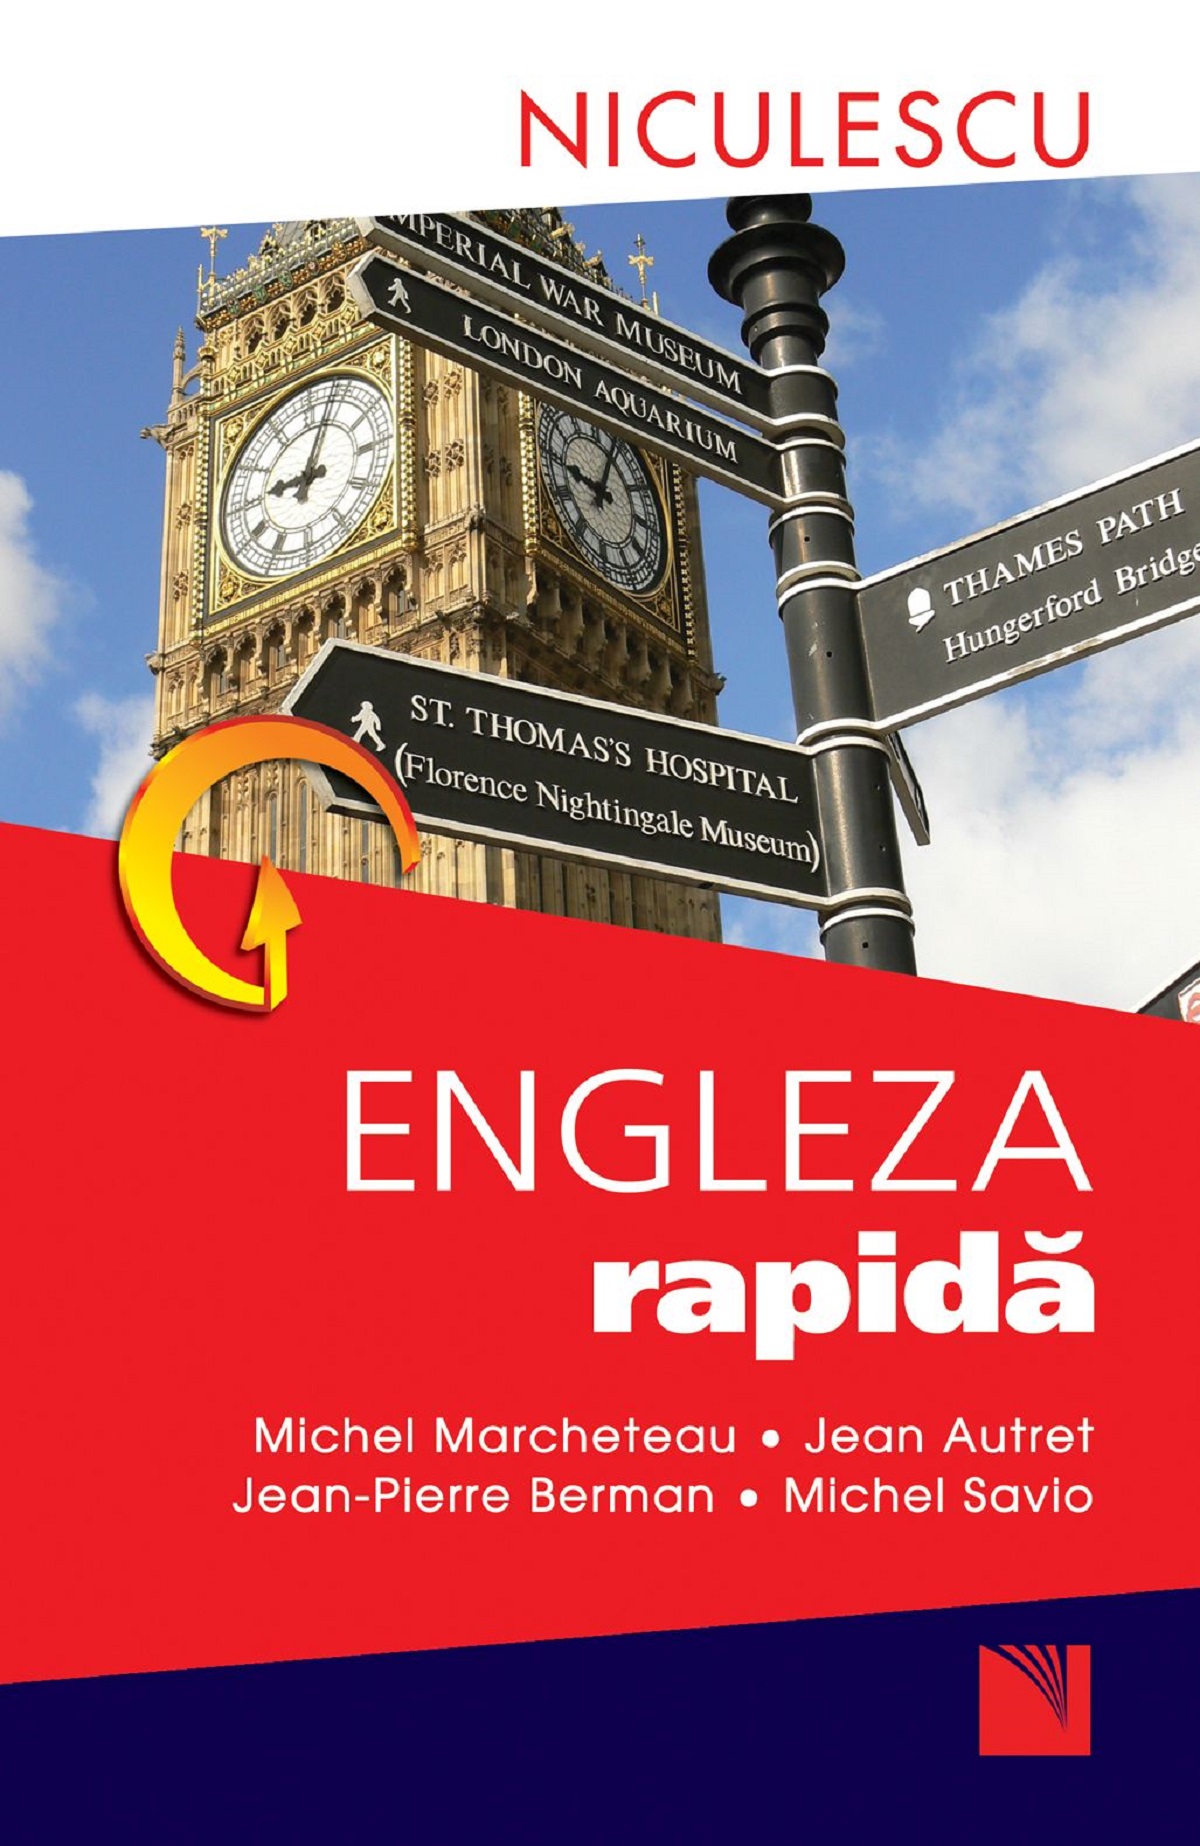 Engleza rapida - Michel Marcheteau, Jean Autret, Jean-Pierre Berman, Michel Savio